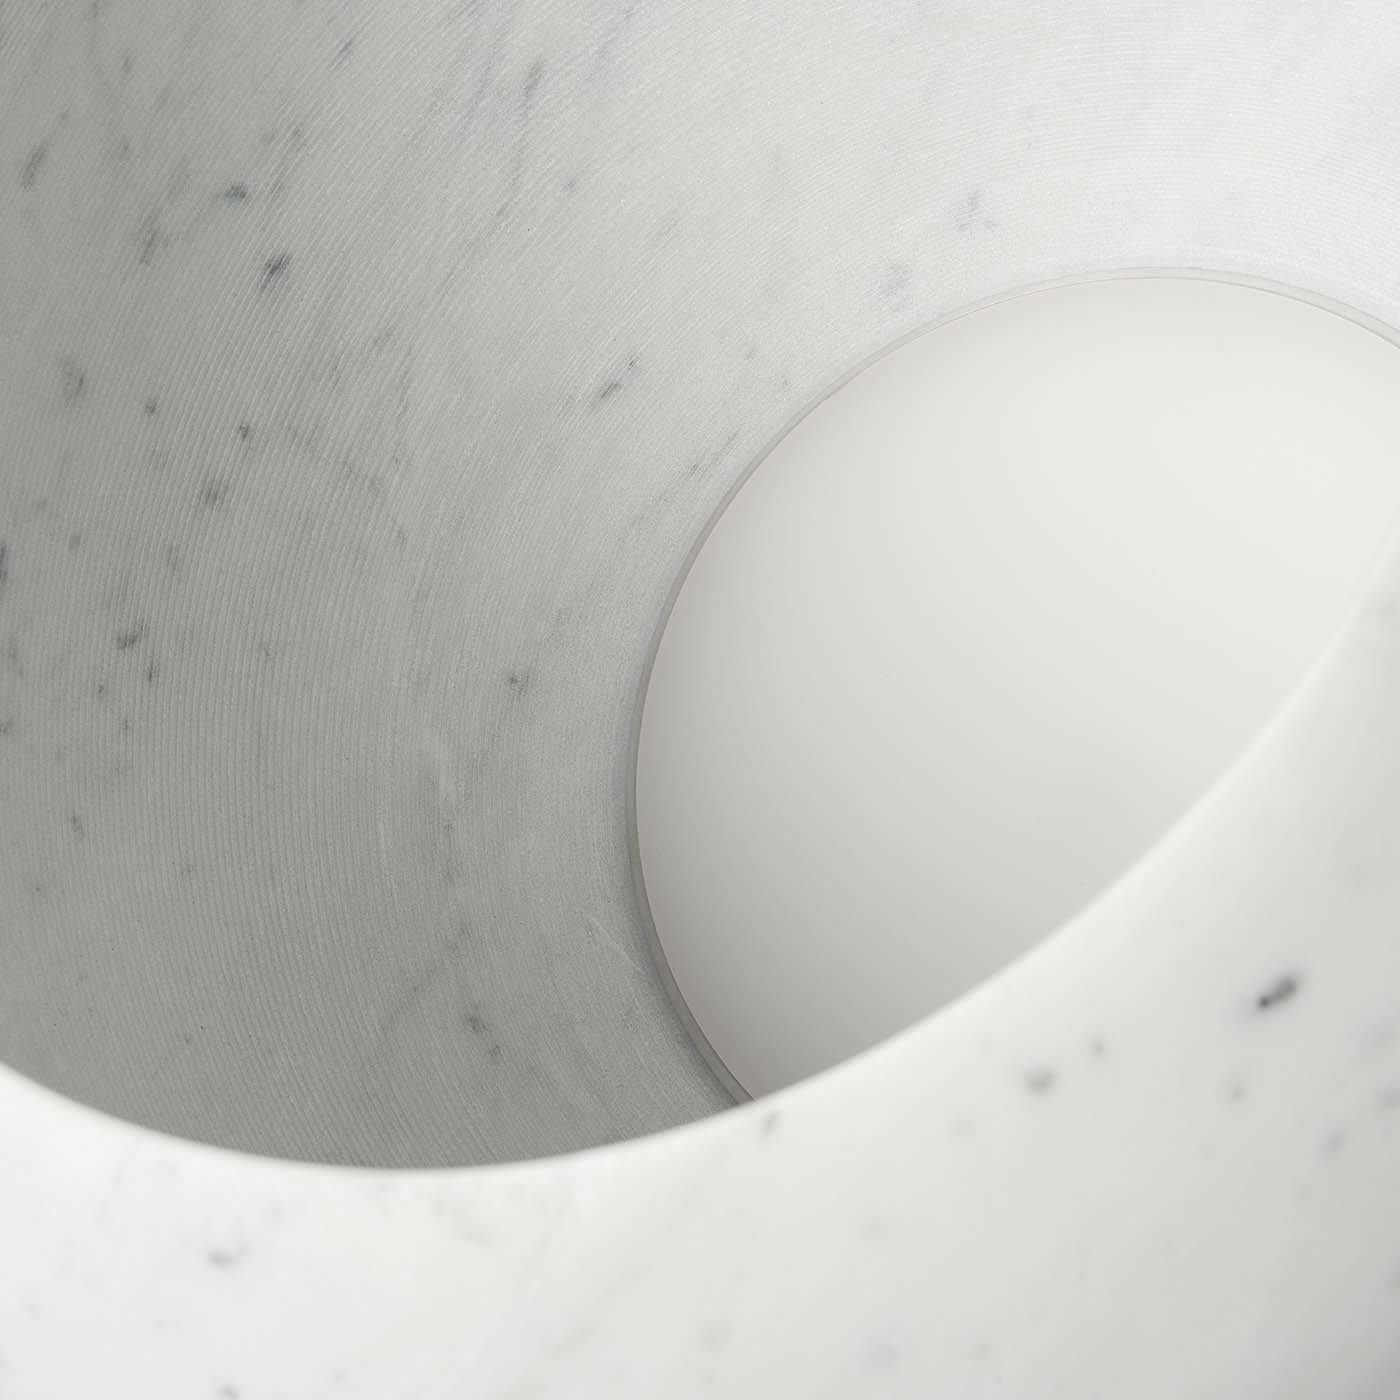 Urano 50 Floor Lamp by Elisa Ossino - Salvatori